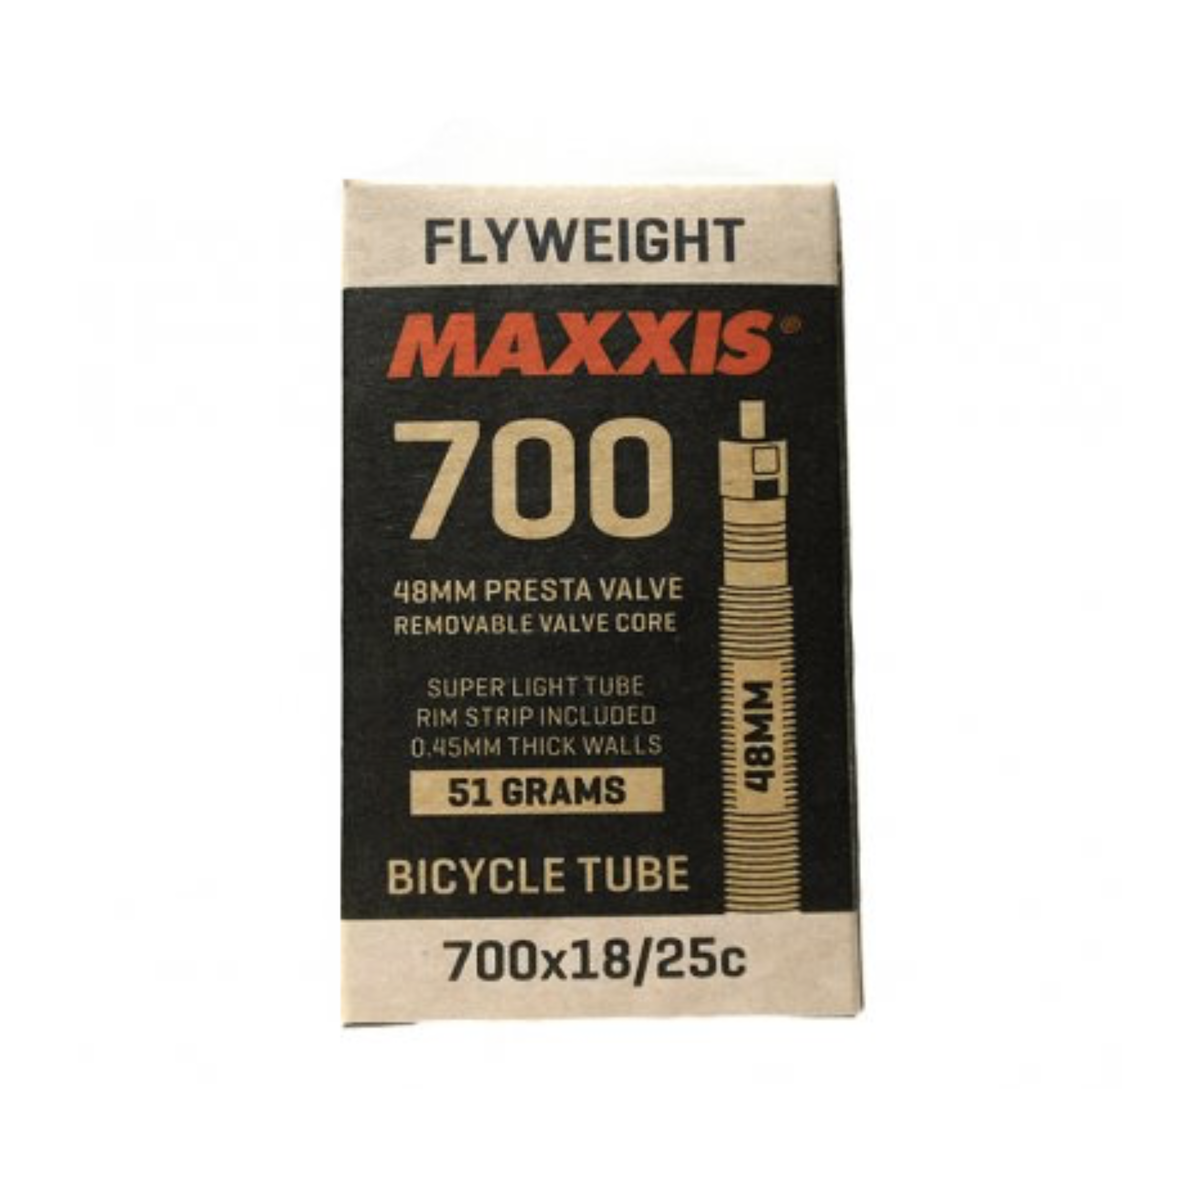 MAXXIS FLYWEIGHT 700 x 18/25C PRESTA RVC